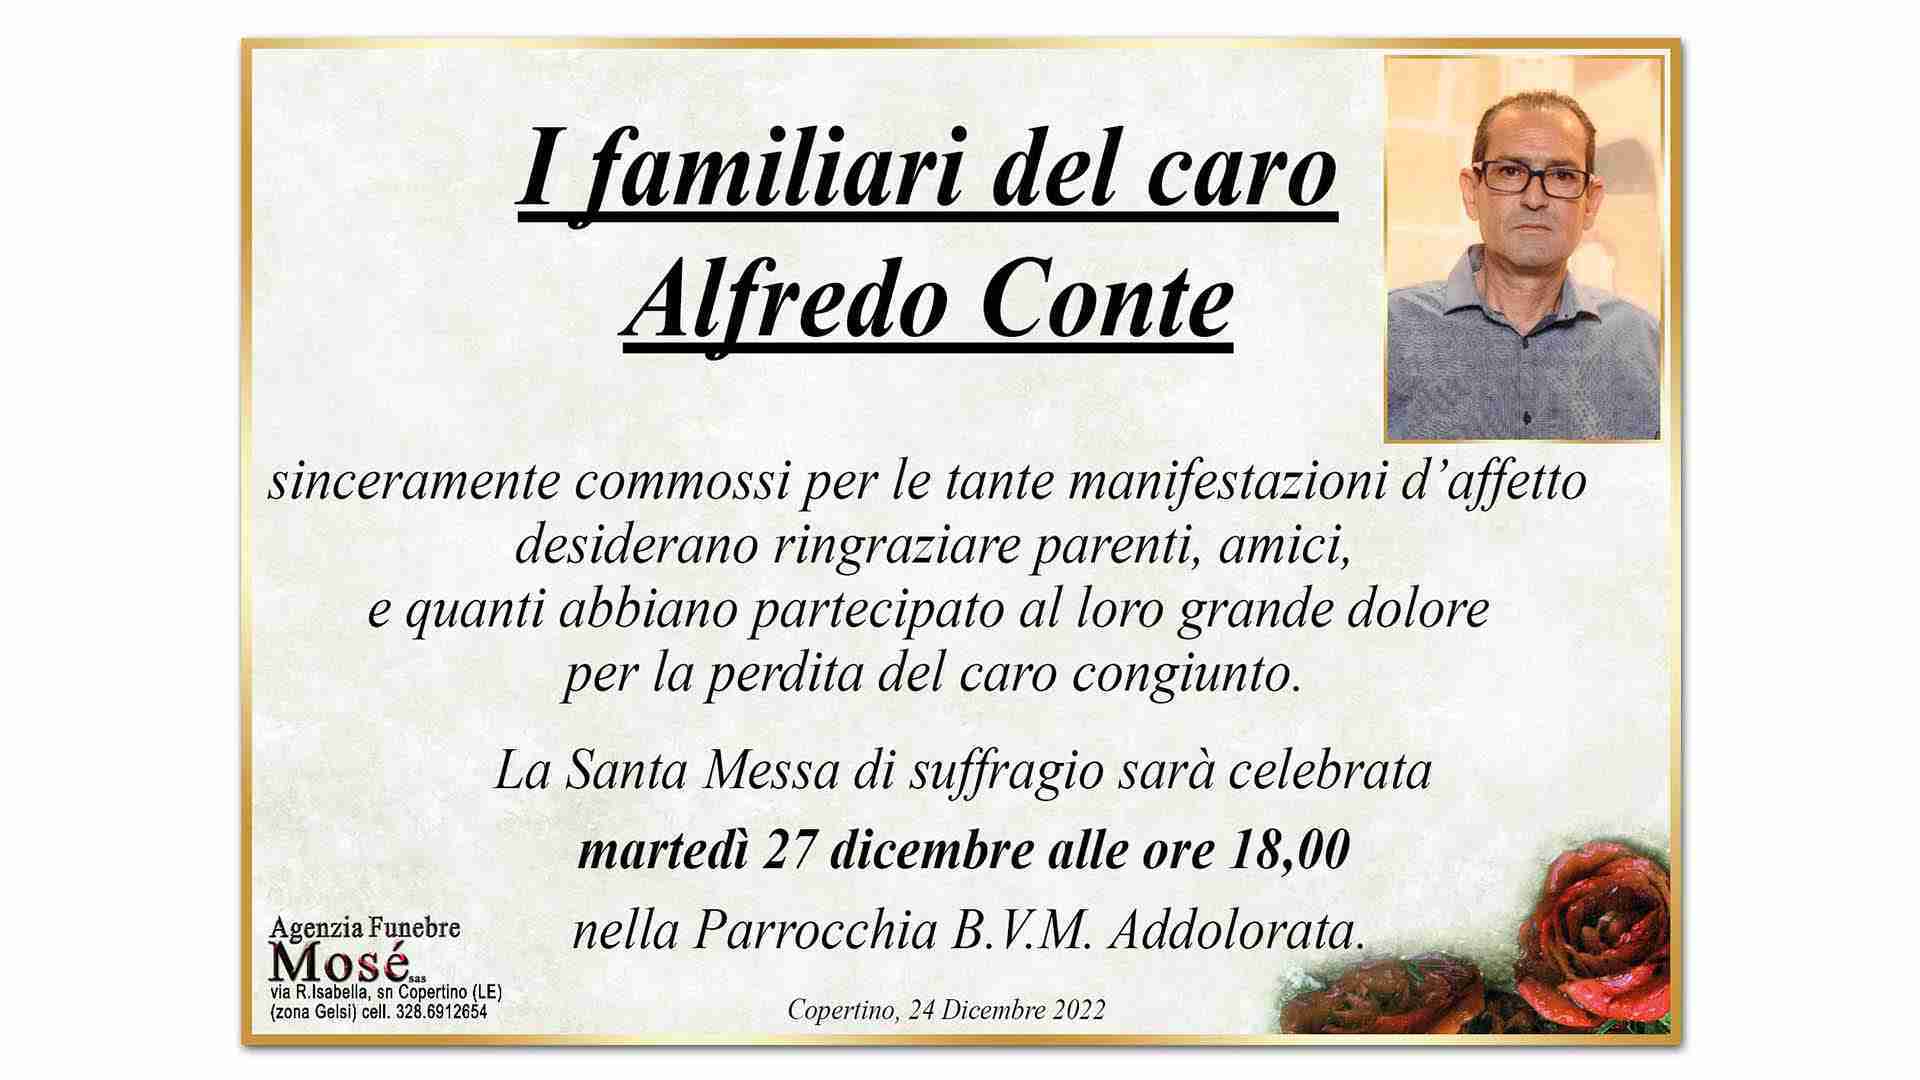 Alfredo Conte